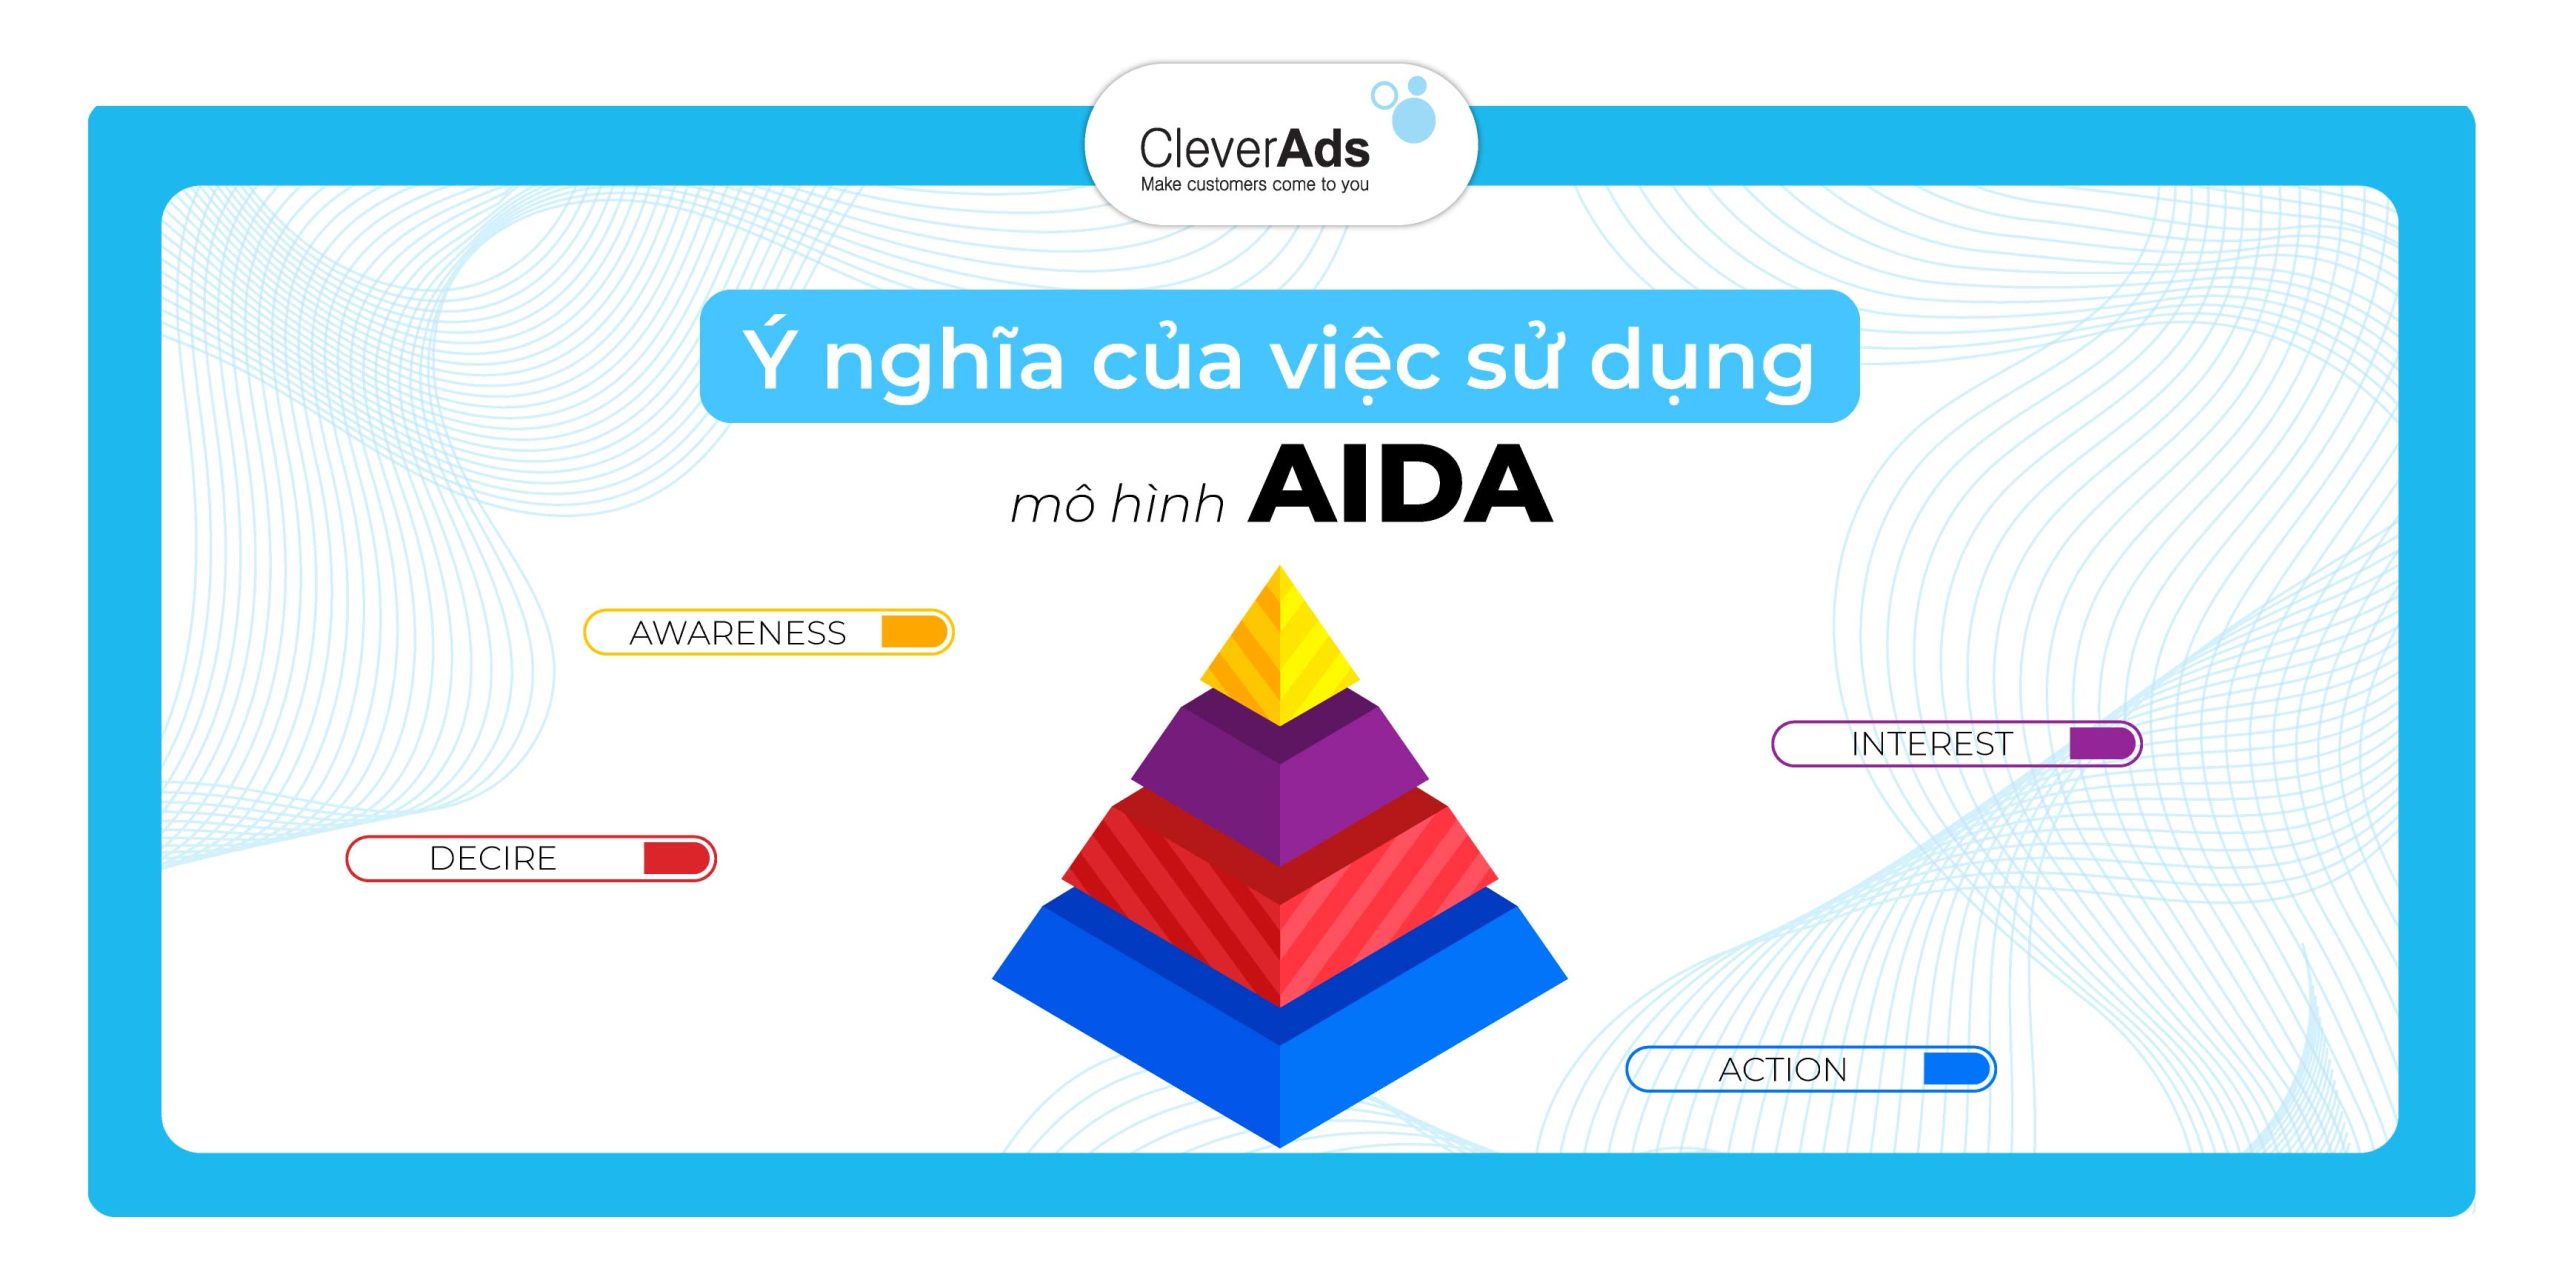 Ý nghĩa của việc sử dụng mô hình AIDA